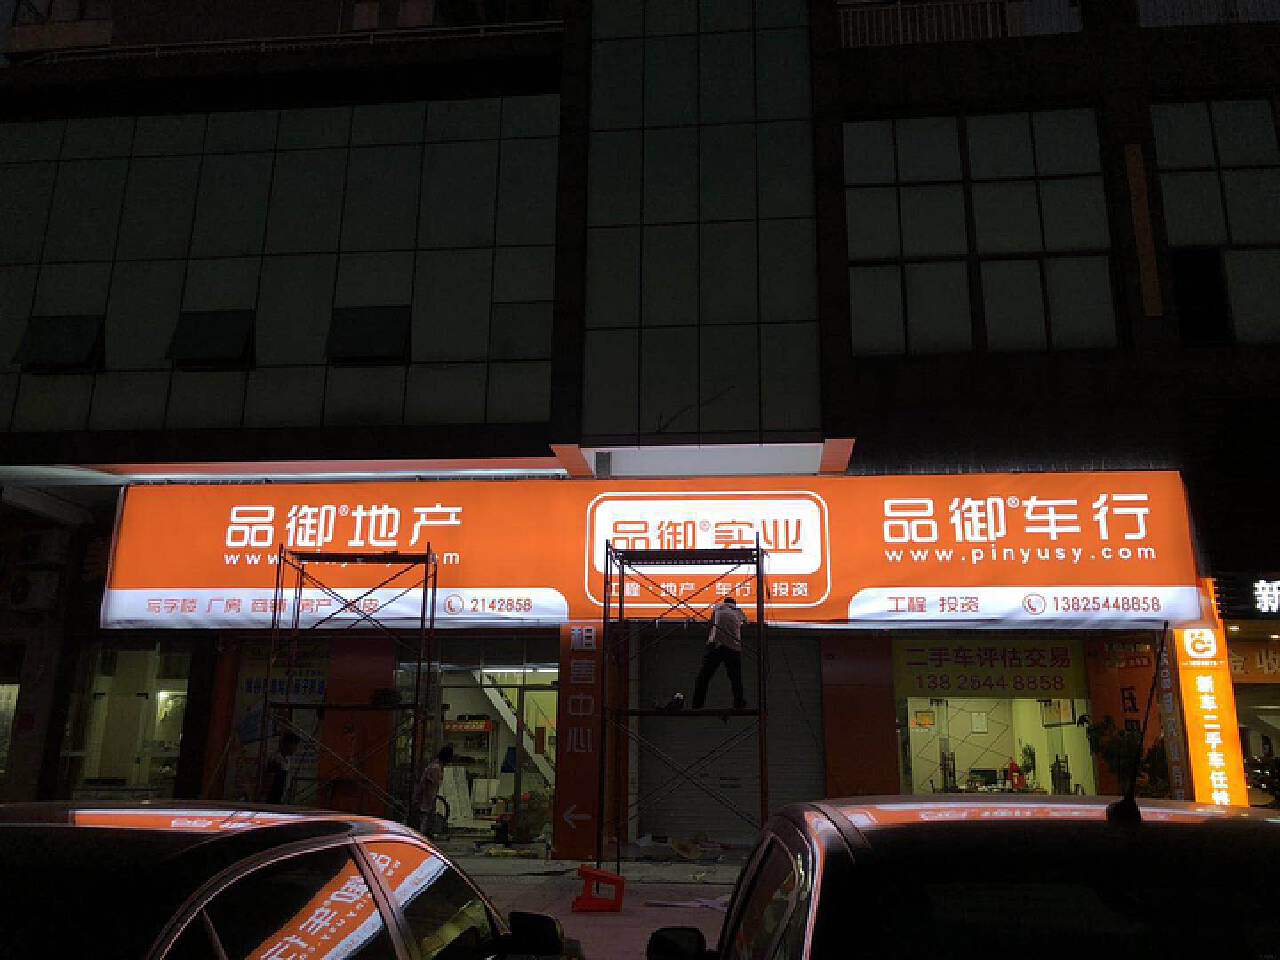 该怎么设计才更能发挥门头招牌的作用-上海恒心广告集团